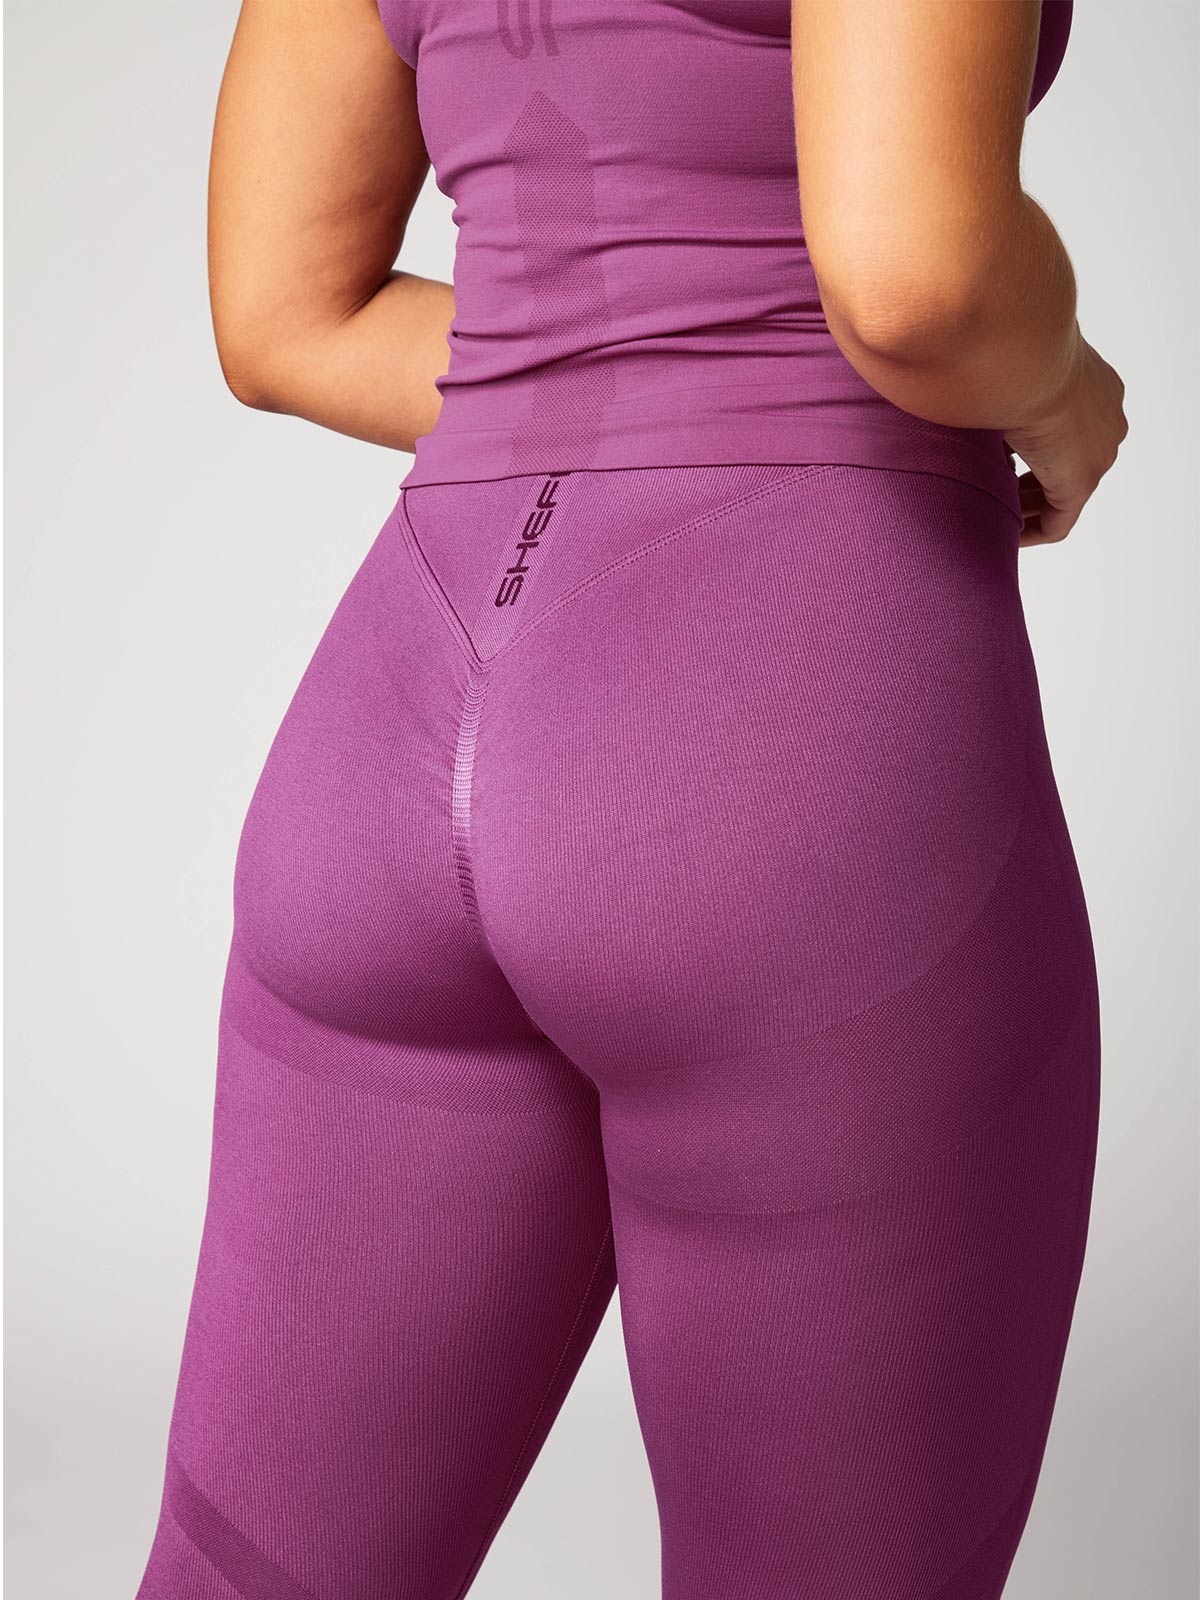 Gymshark Dry Leggings Women's Gray Purple Waistband Size Small S Full Leg